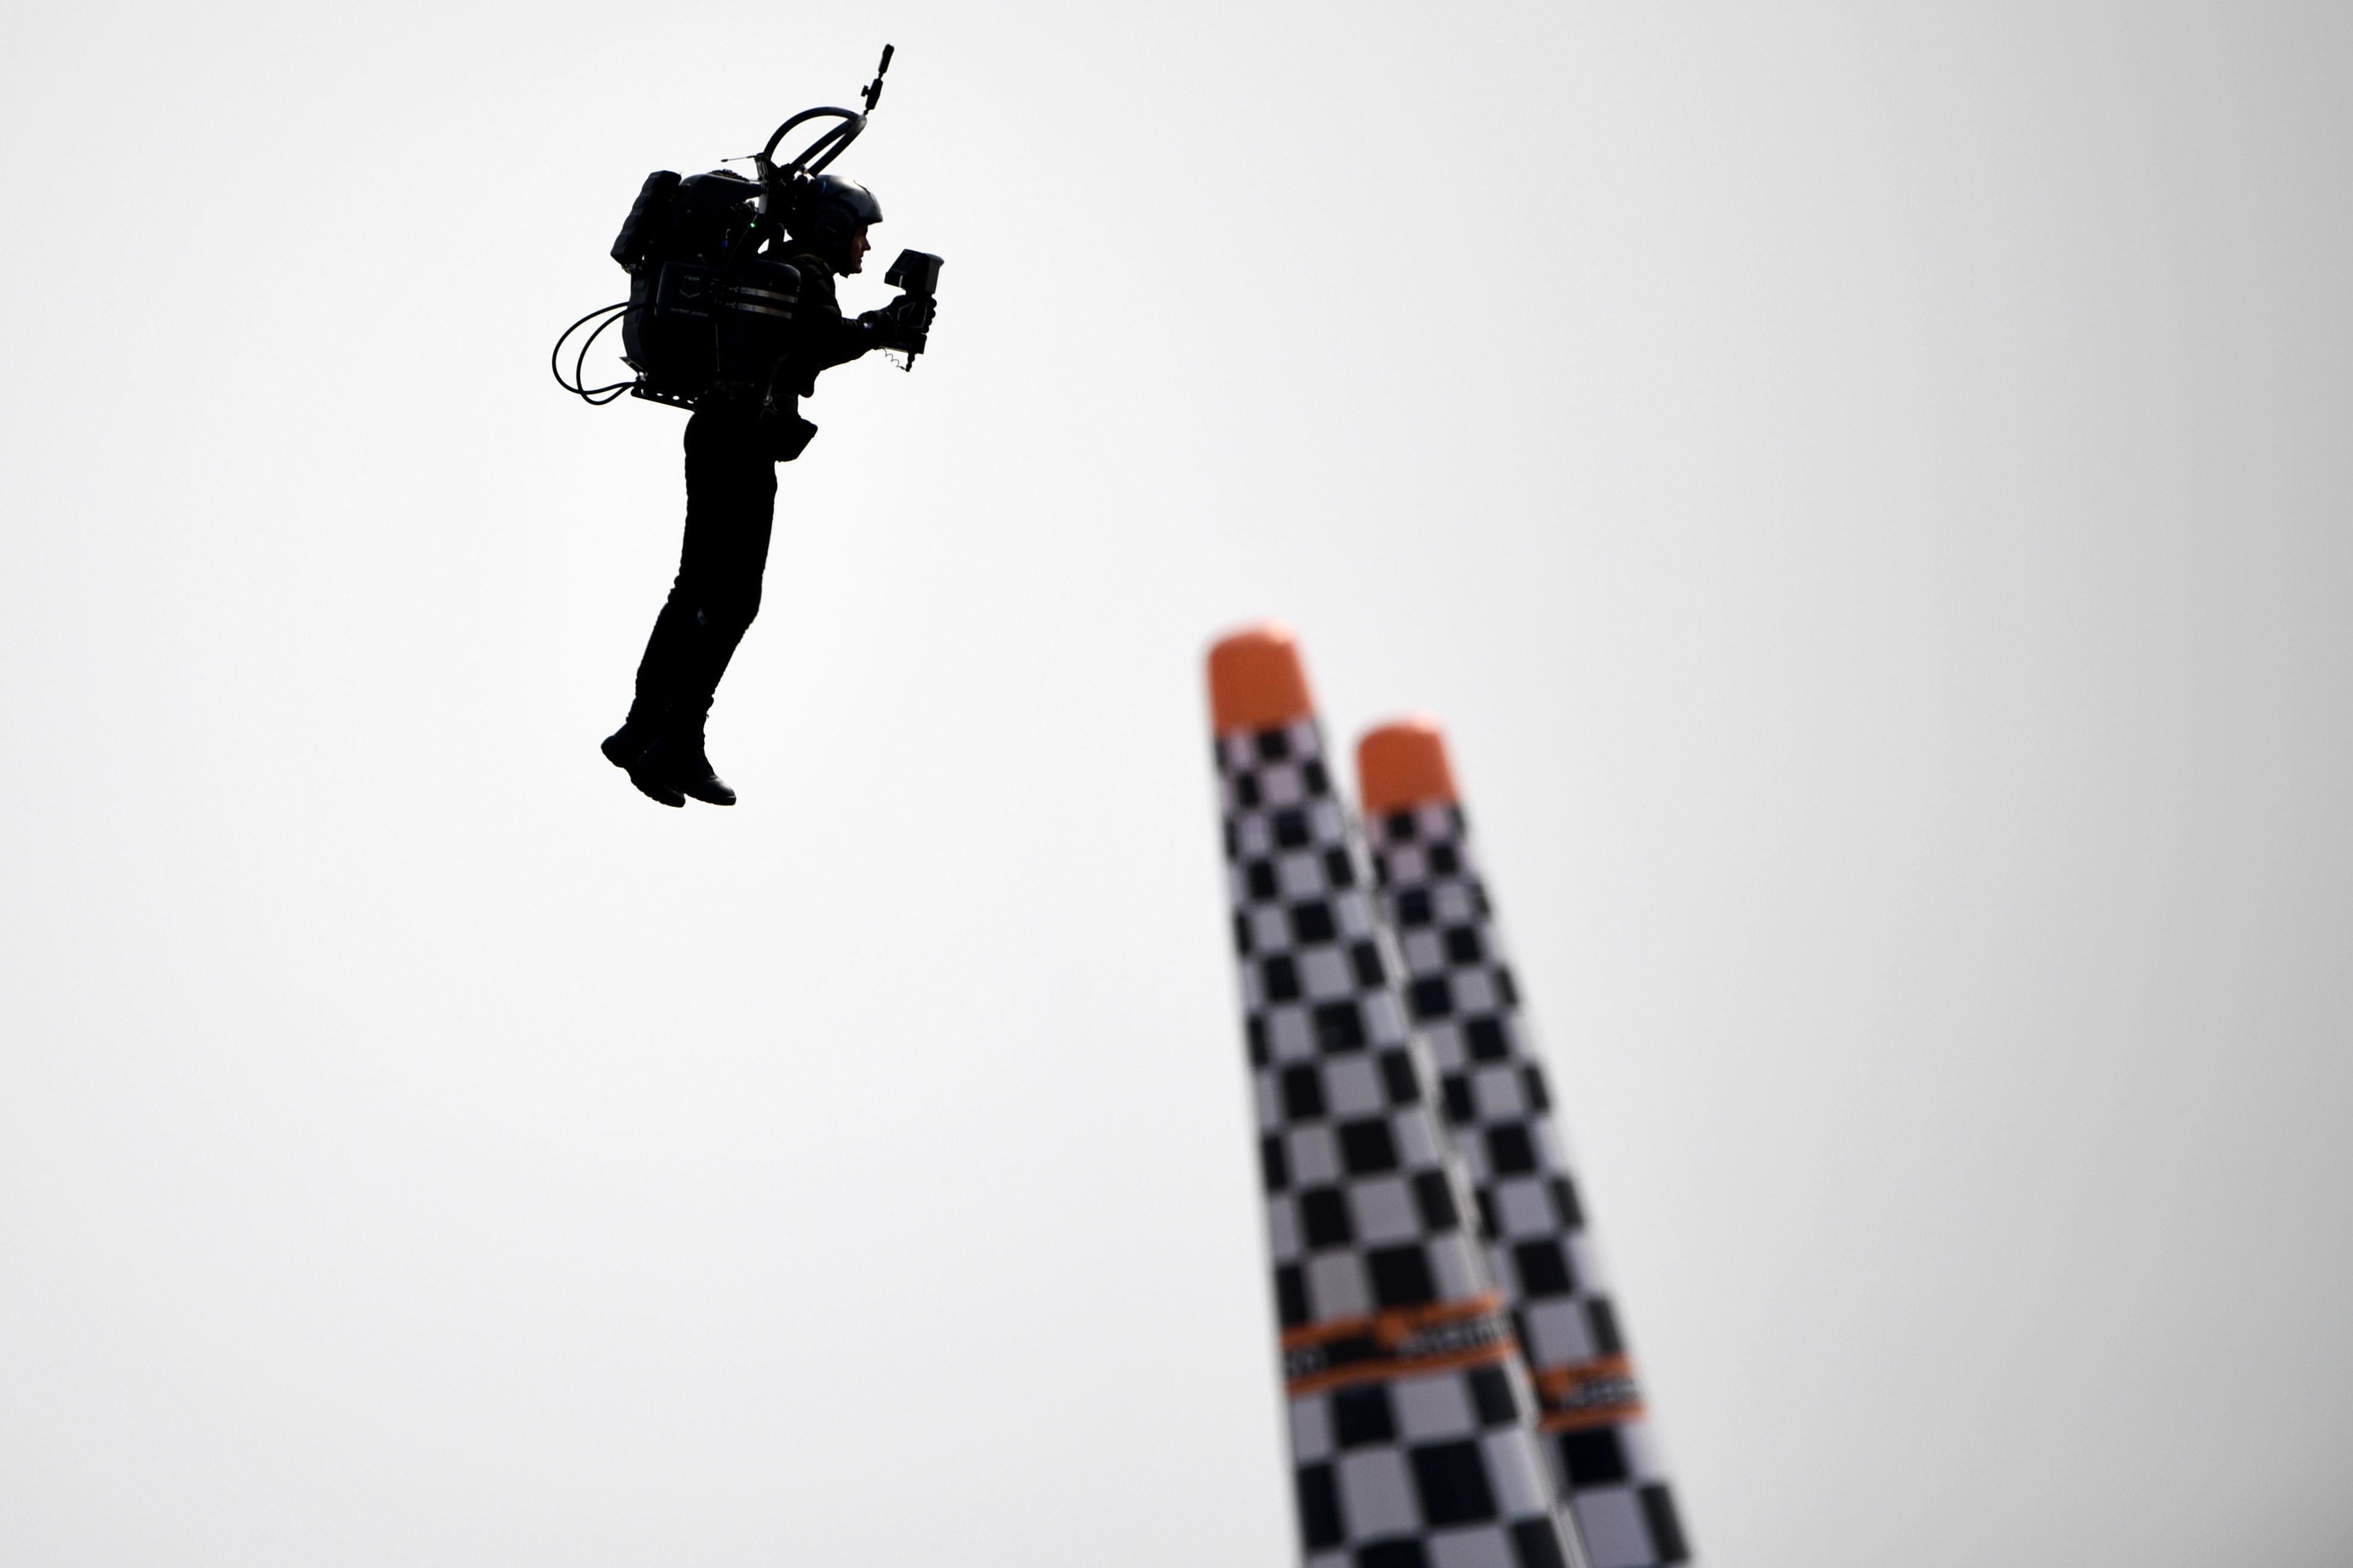 A man flies near two poles.